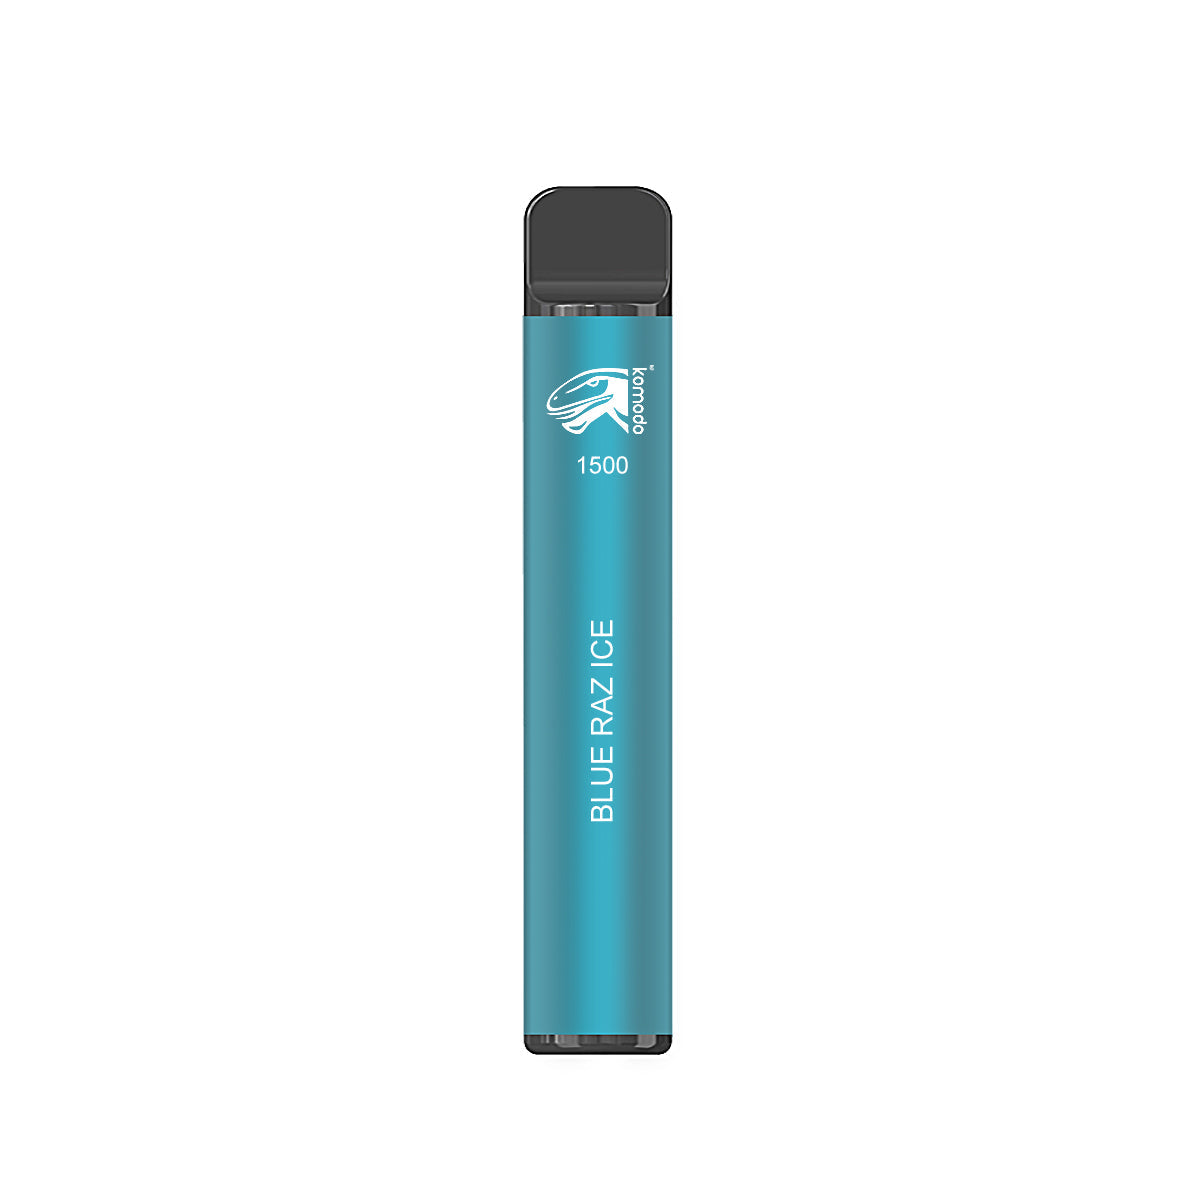 Komodo 1500 Puffs Disposable Vape Prefilled Electronic Cigarette (10pcs)